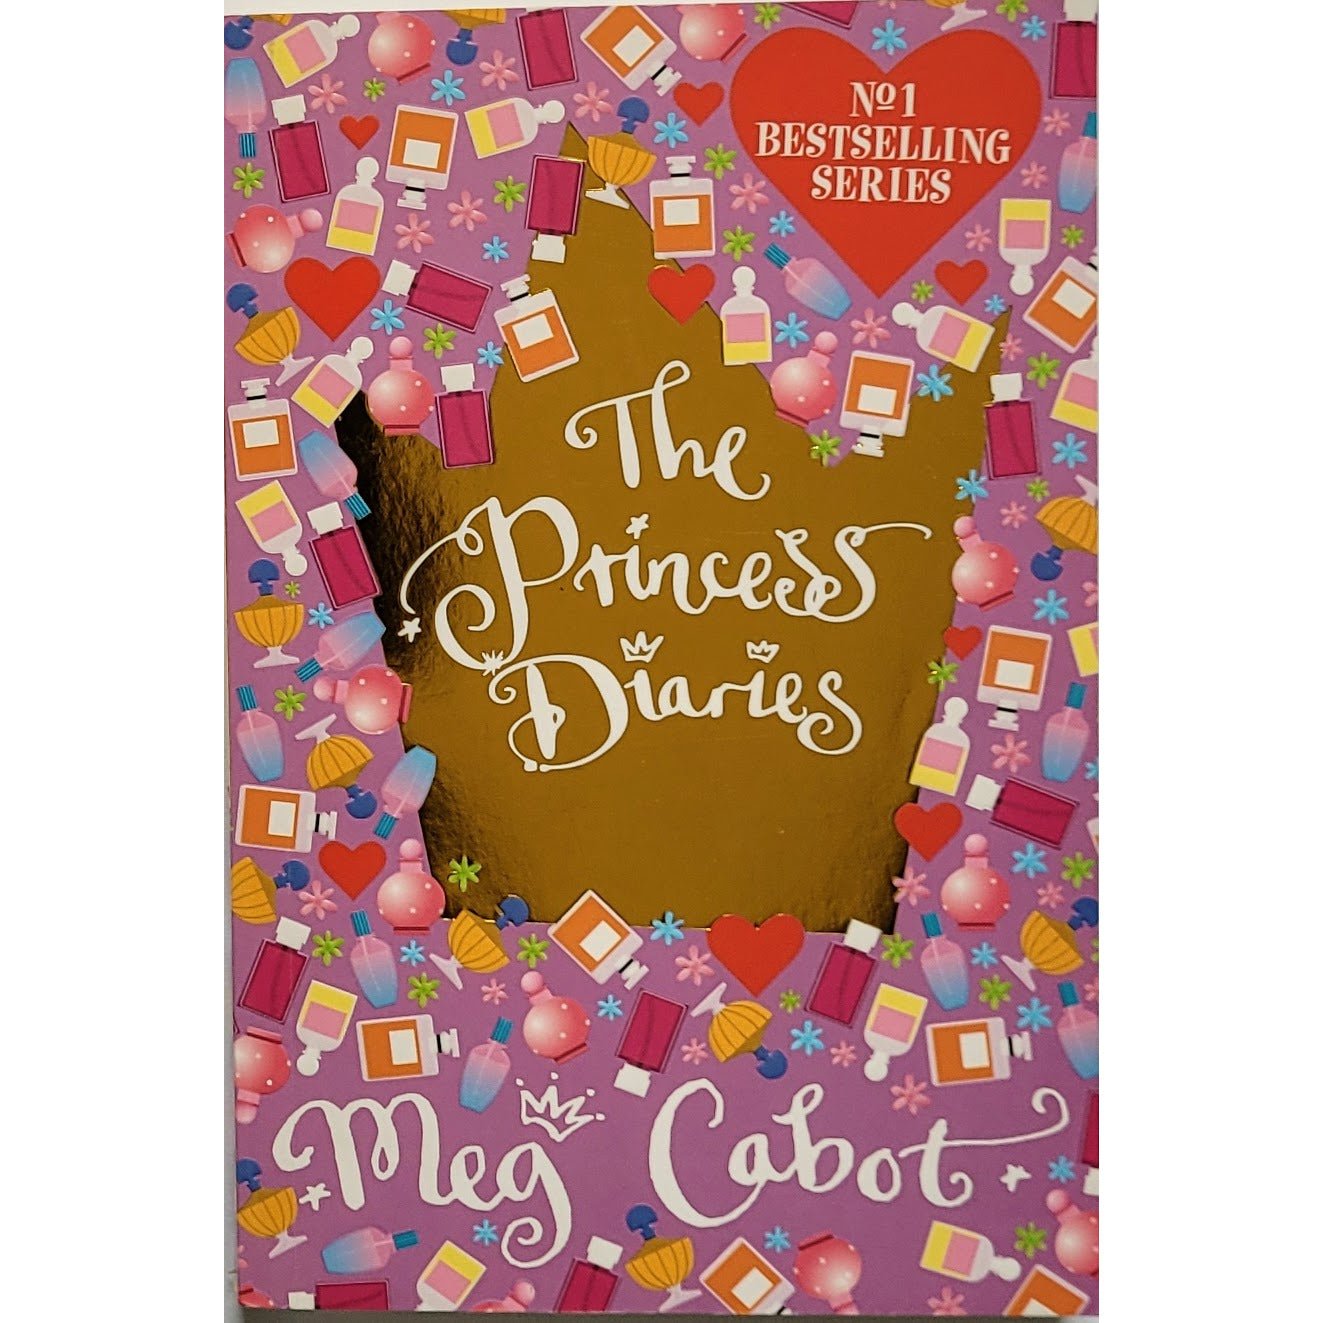 Cabot, Meg: The Princess Diaries